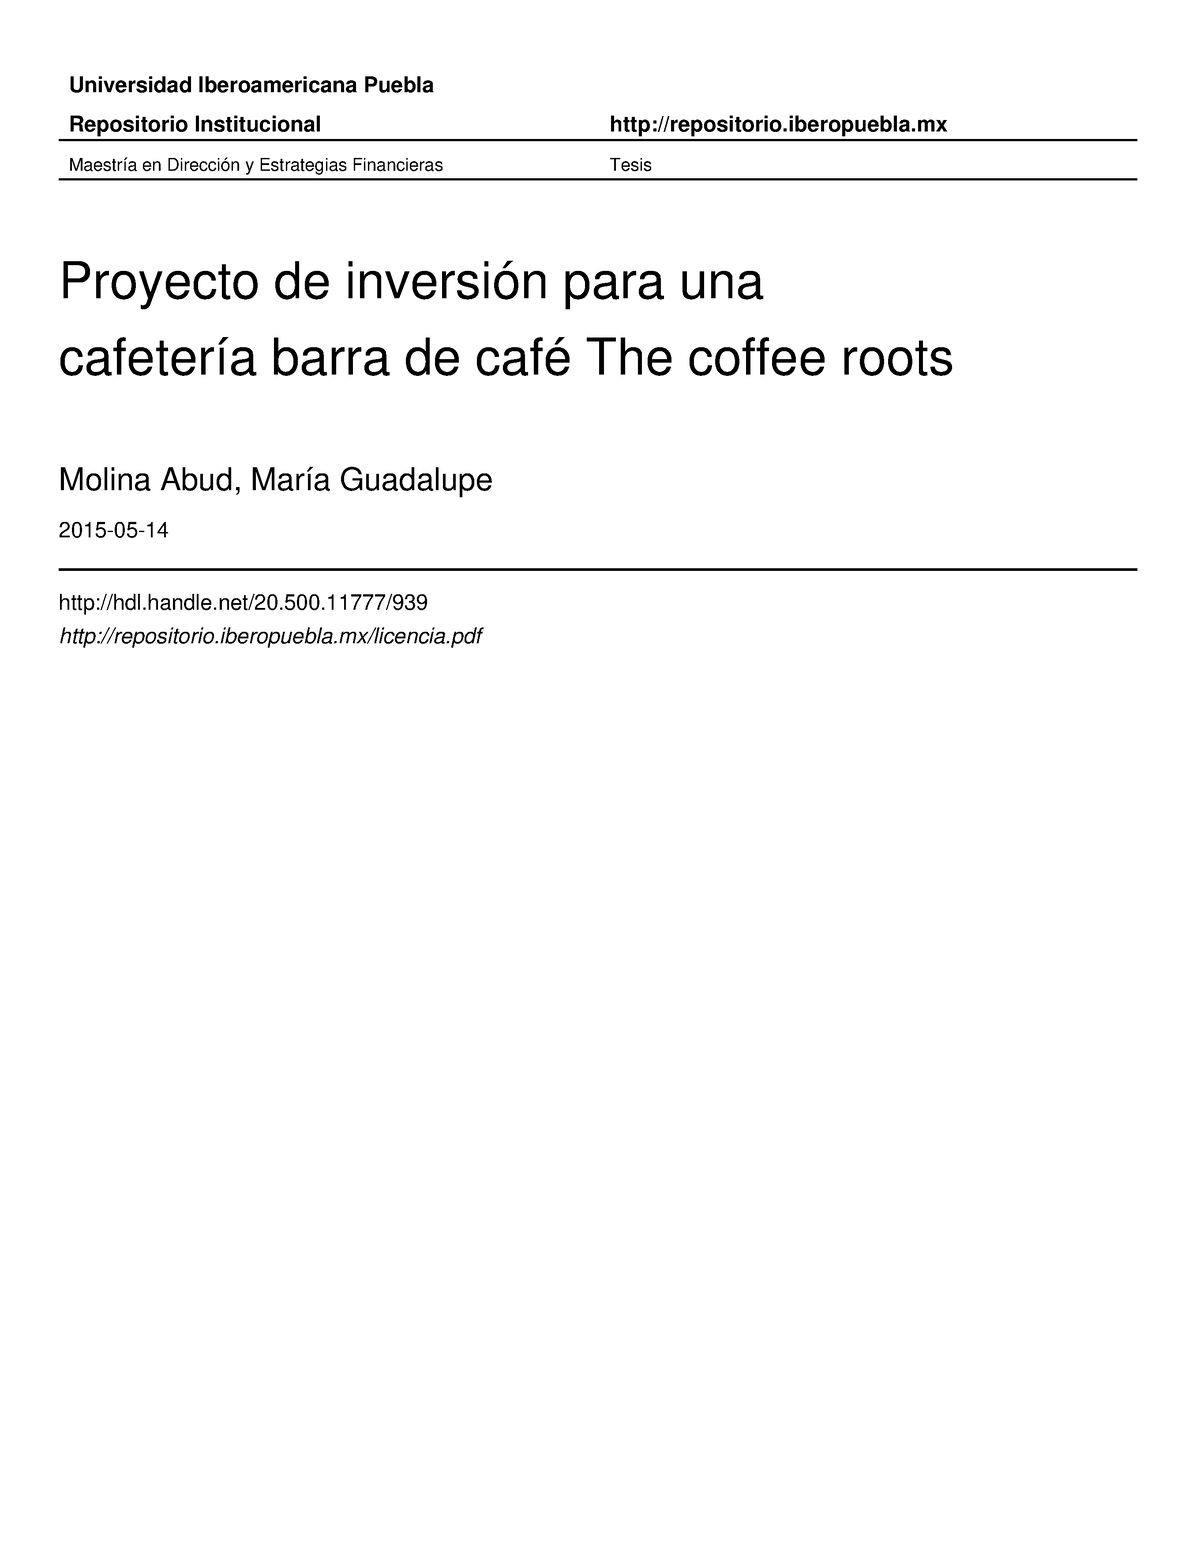 Proyecto cafeteria detallado paso a paso - Universidad Iberoamericana  Puebla Repositorio - Studocu